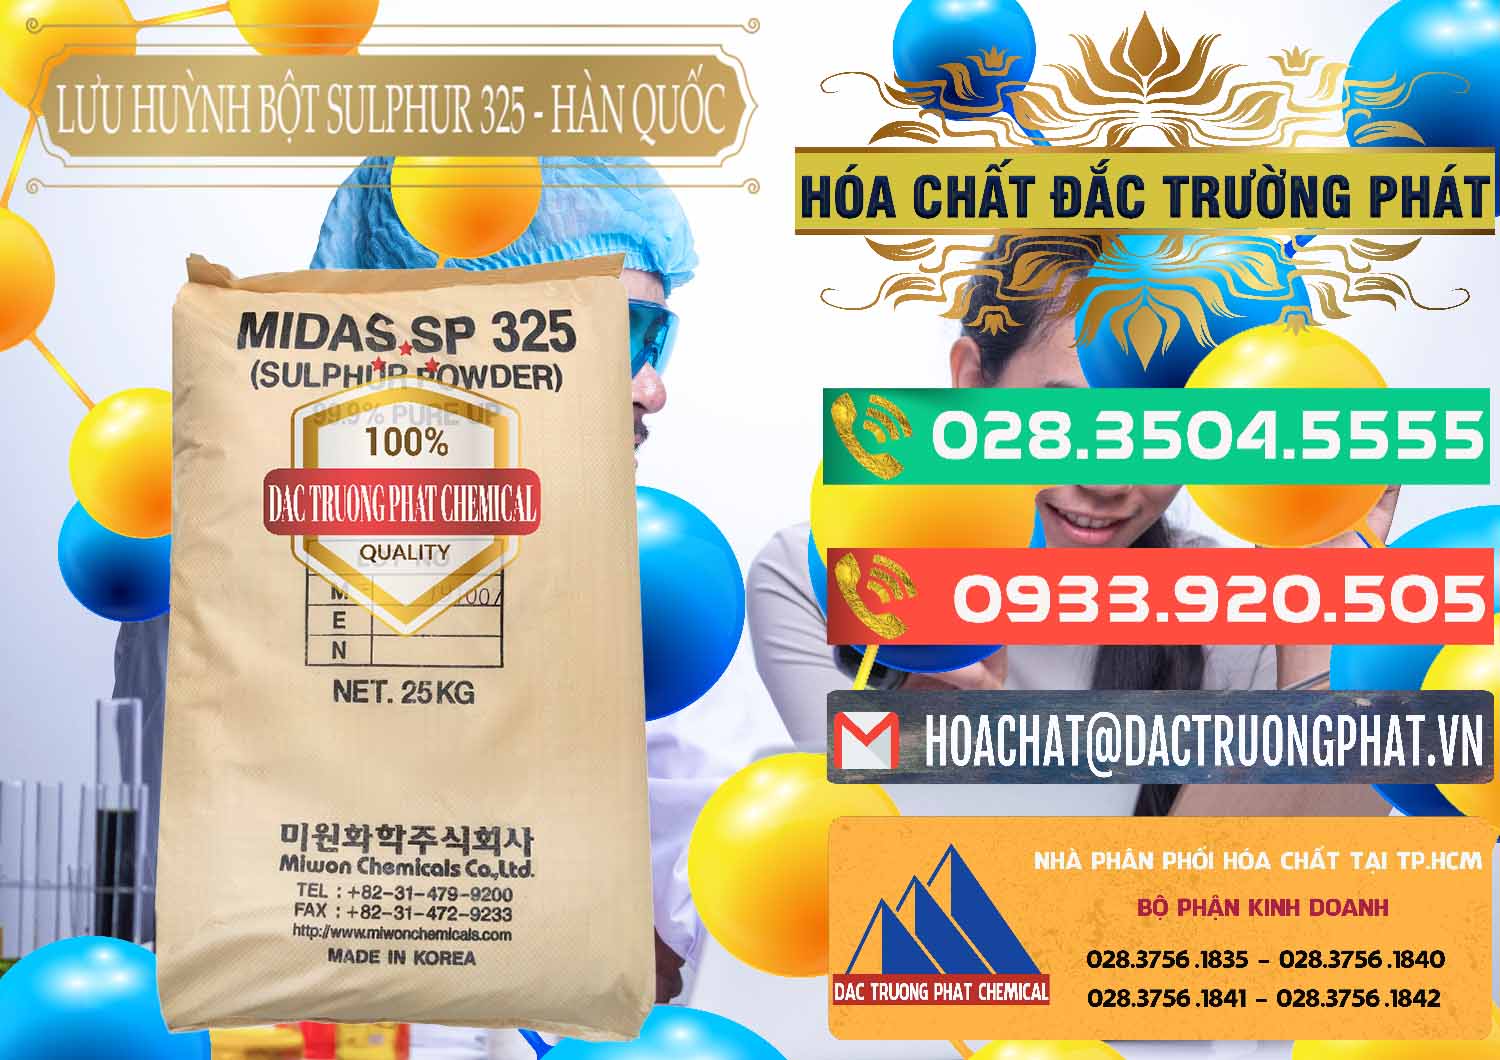 Chuyên bán & cung ứng Lưu huỳnh Bột - Sulfur Powder Midas SP 325 Hàn Quốc Korea - 0198 - Cty phân phối ( cung cấp ) hóa chất tại TP.HCM - congtyhoachat.com.vn